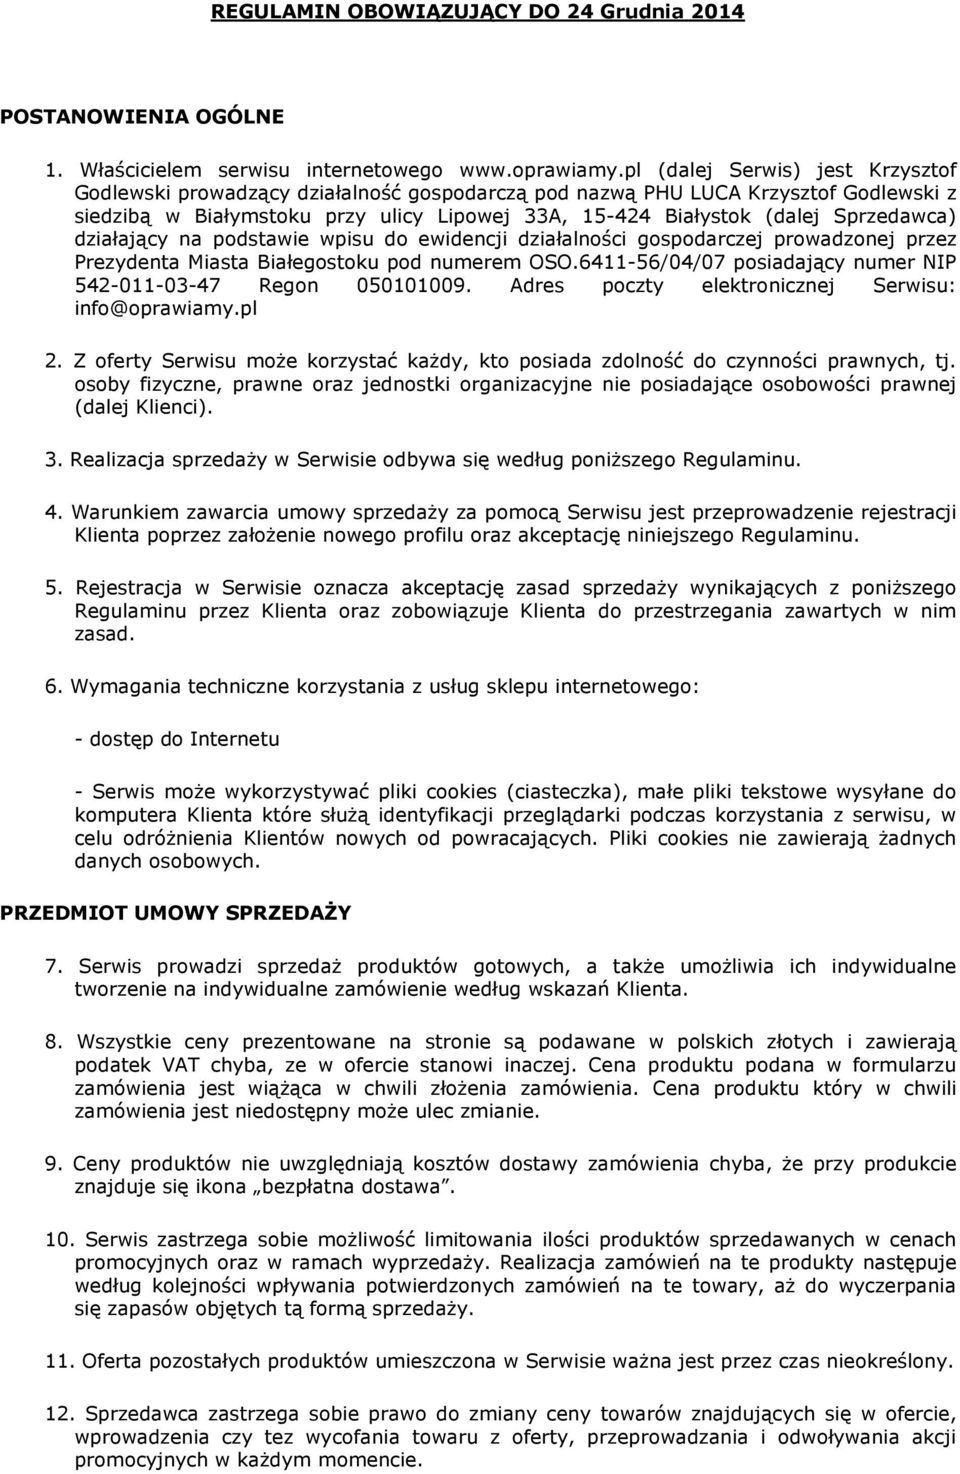 Sprzedawca) działający na podstawie wpisu do ewidencji działalności gospodarczej prowadzonej przez Prezydenta Miasta Białegostoku pod numerem OSO.